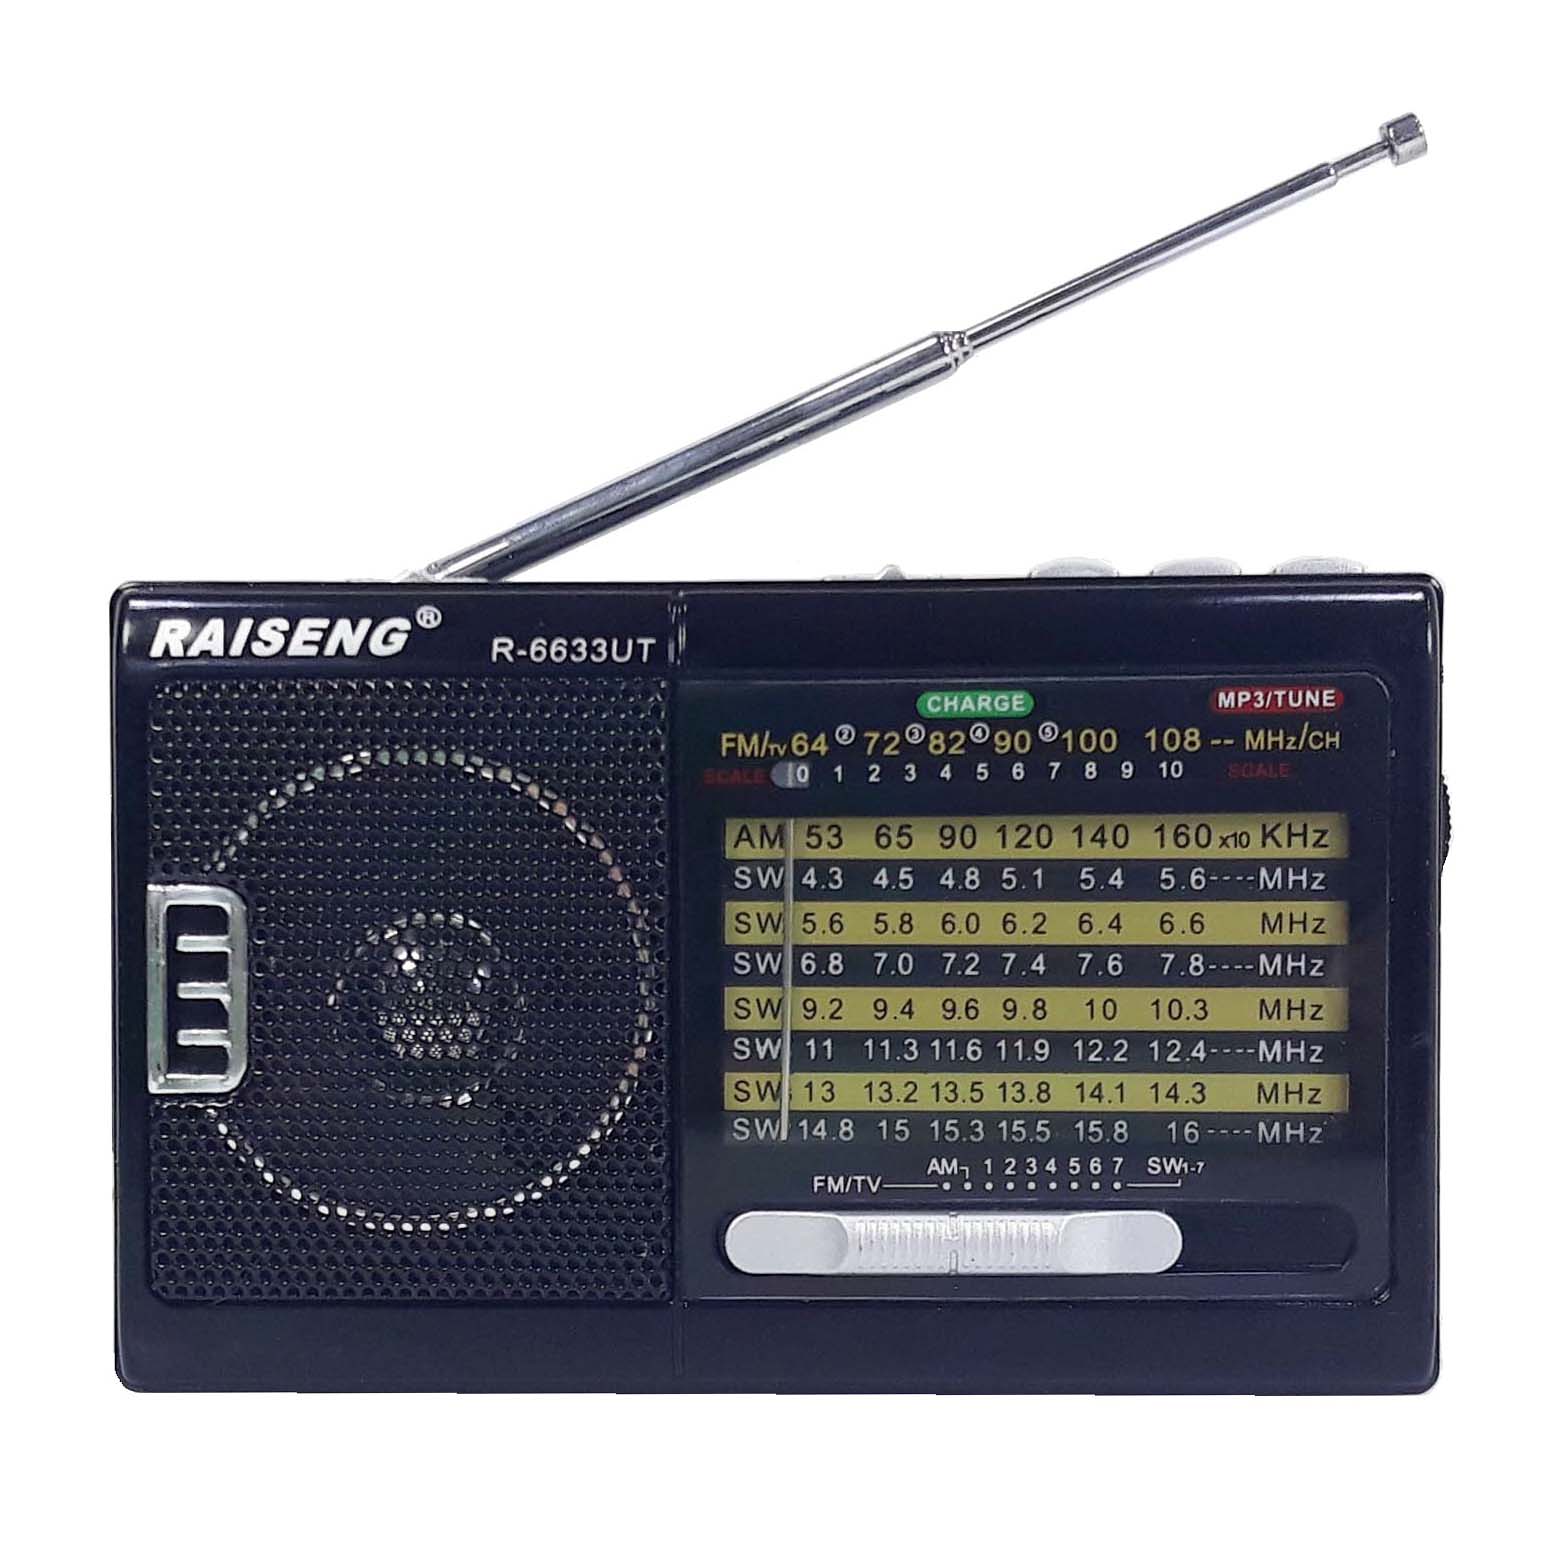 رادیو ریزنگ مدل R-6633UT